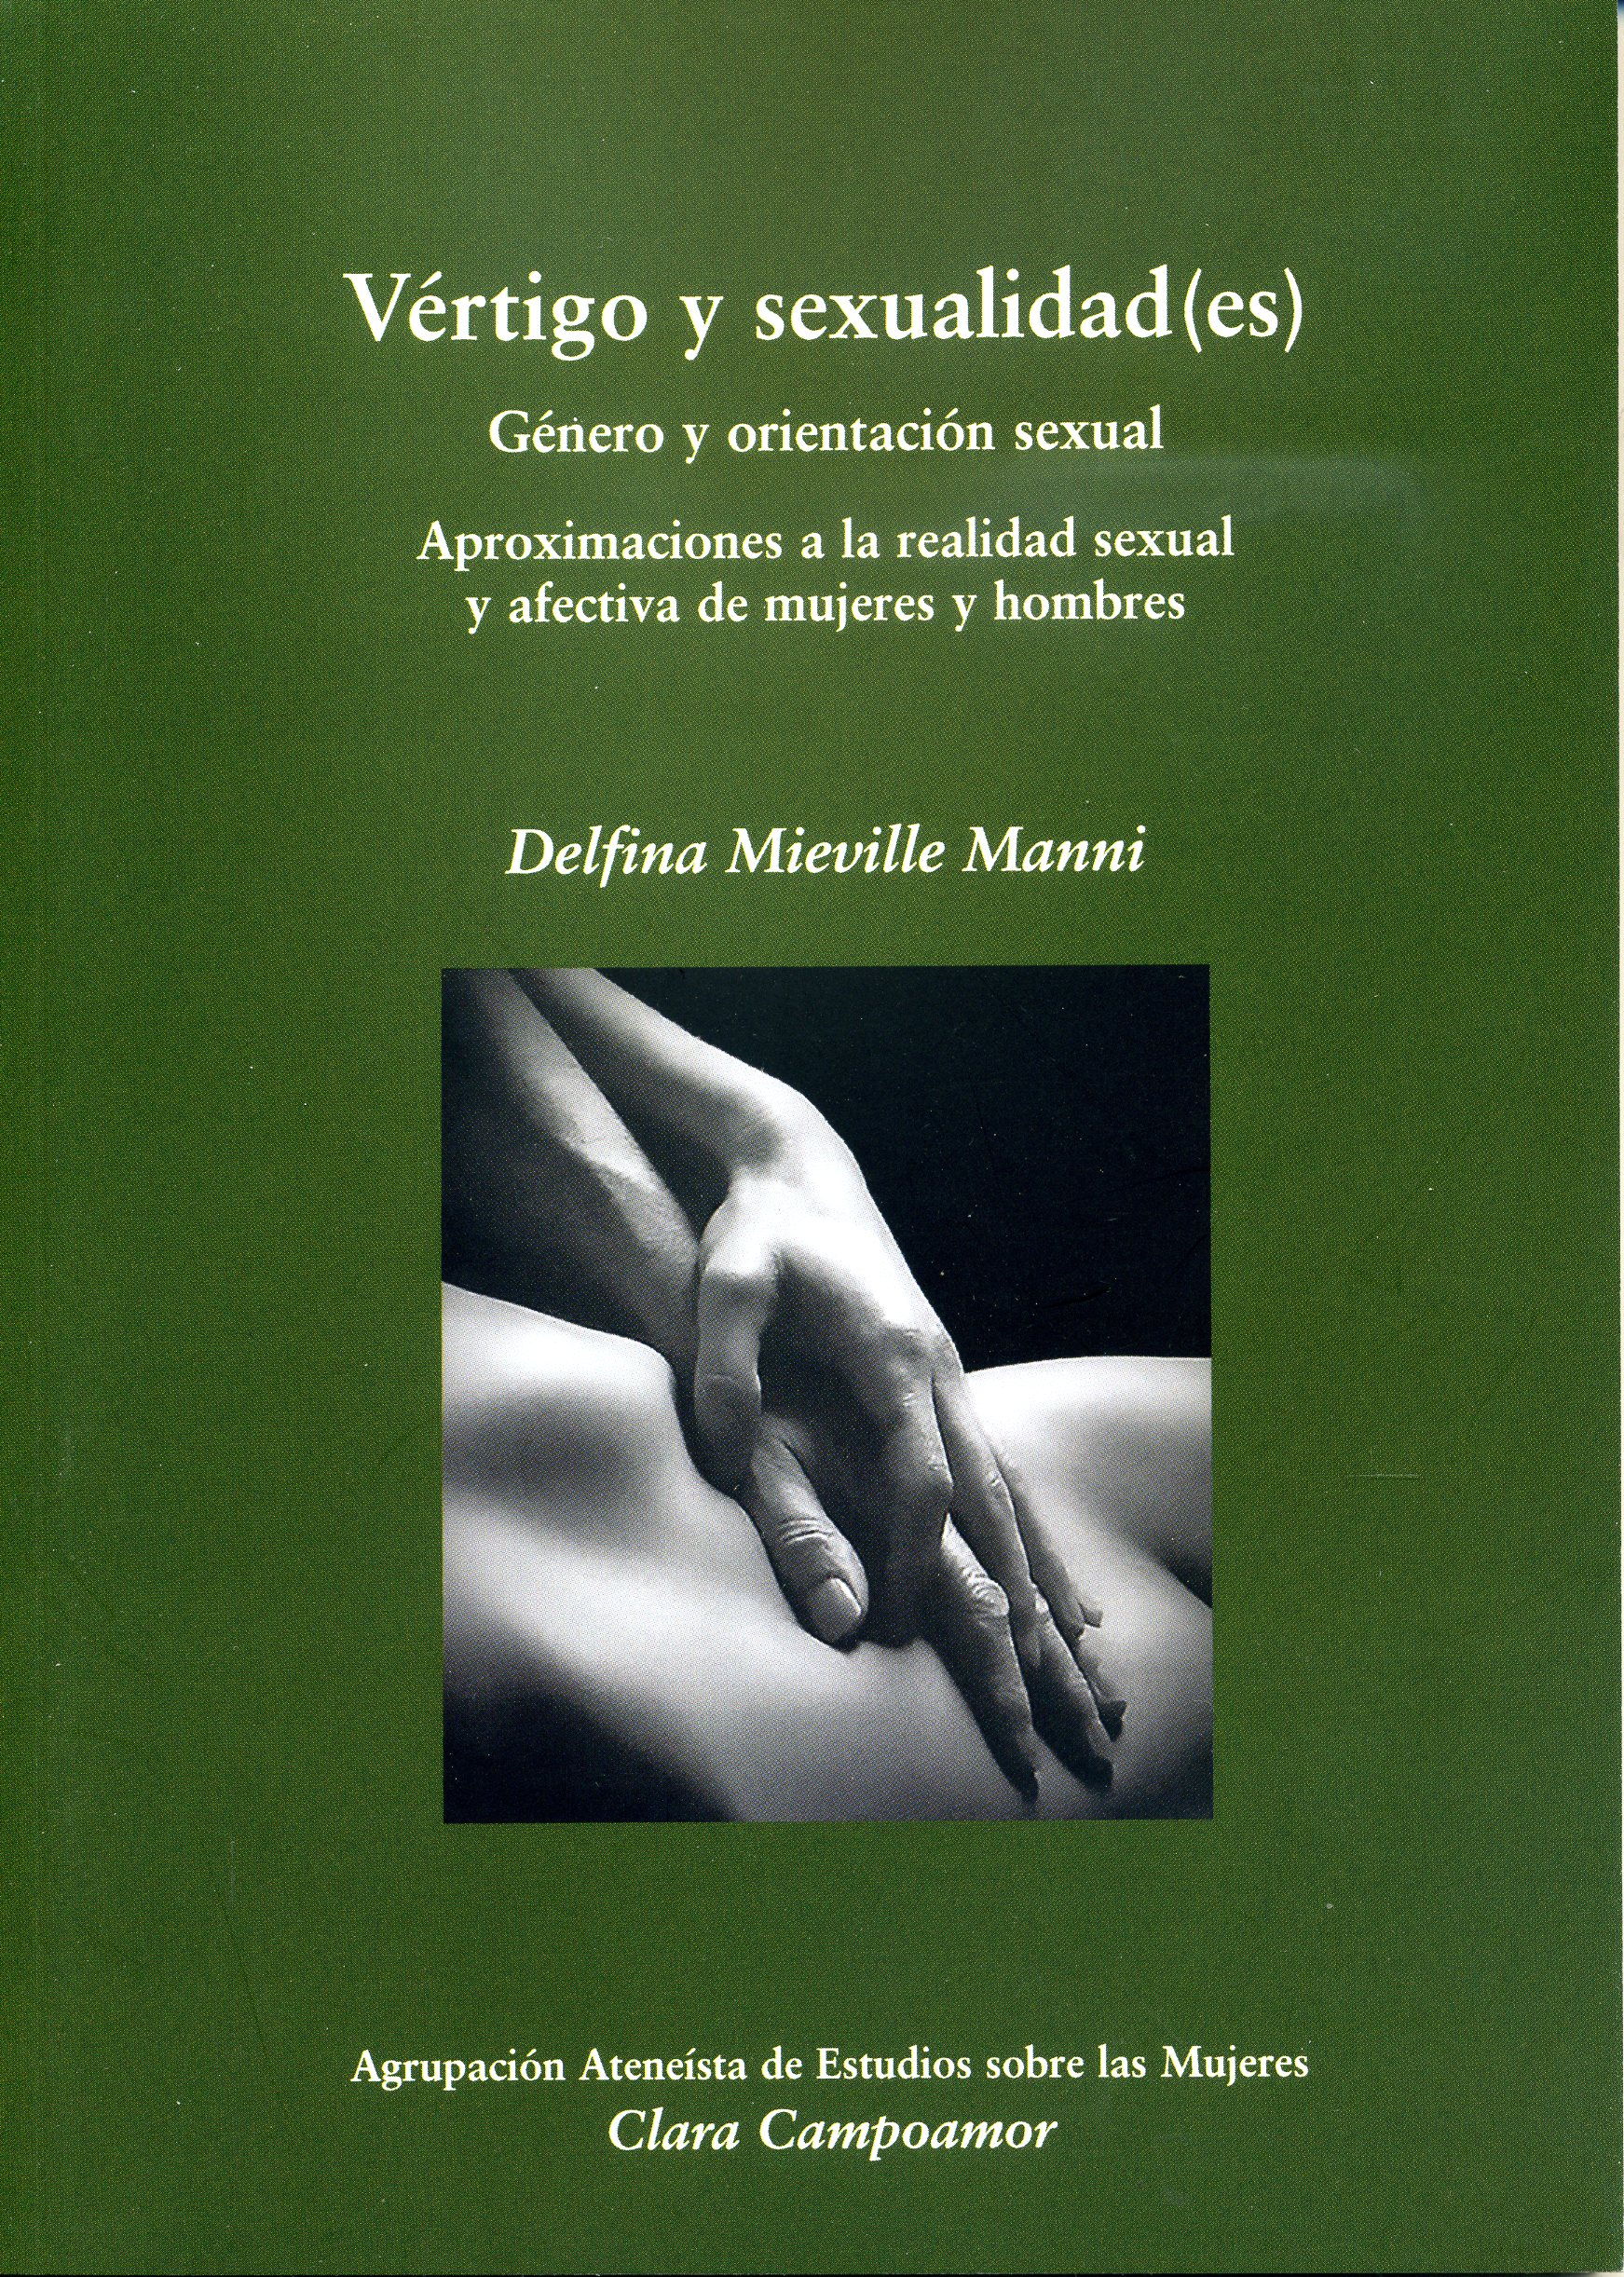 Vértigo y sexualidad(es). Género y orientación sexual